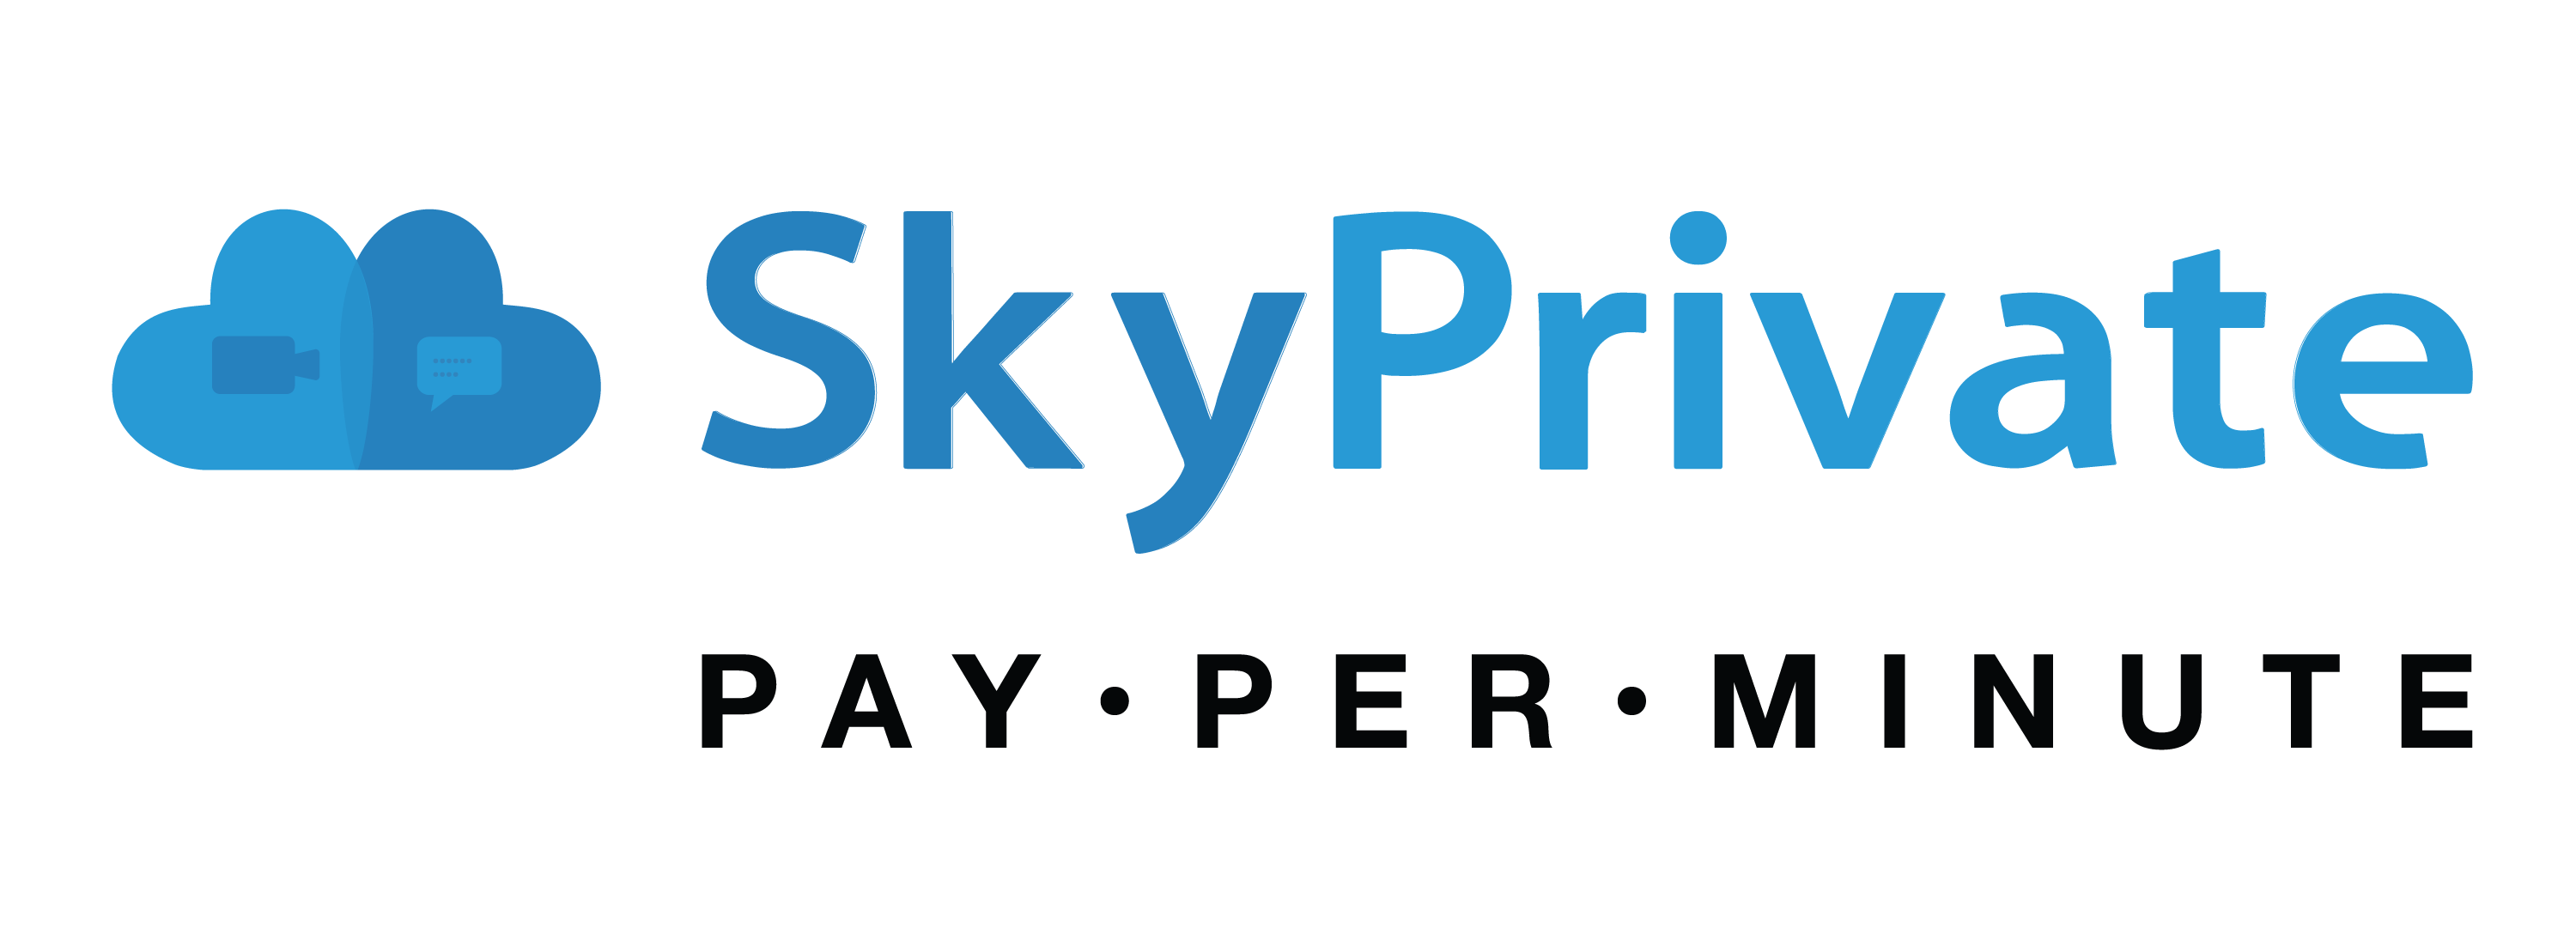 Skyprivae